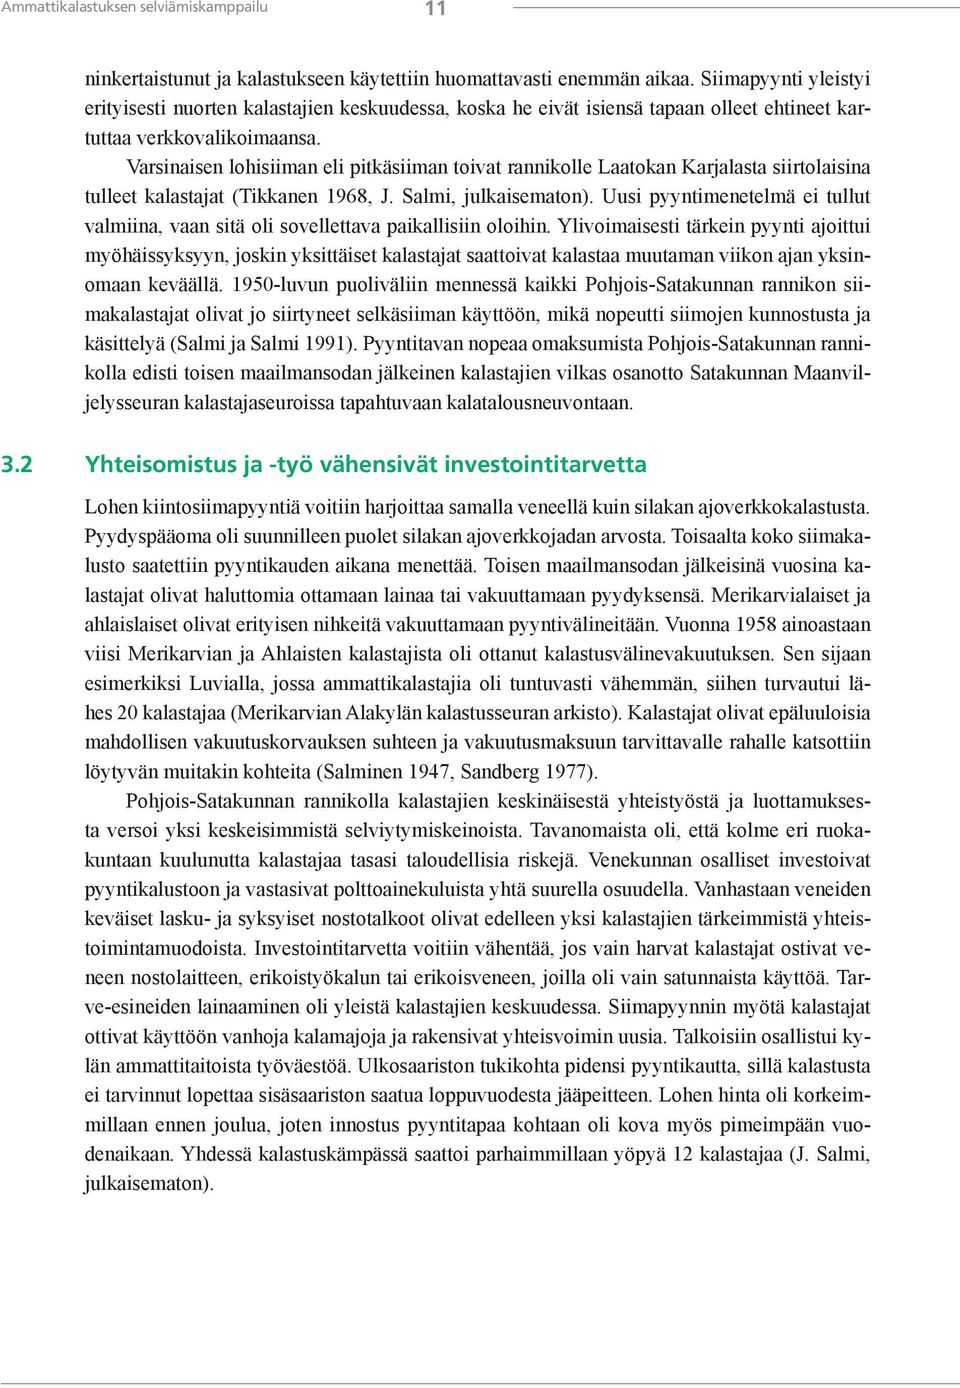 Varsinaisen lohisiiman eli pitkäsiiman toivat rannikolle Laatokan Karjalasta siirtolaisina tulleet kalastajat (Tikkanen 1968, J. Salmi, julkaisematon).